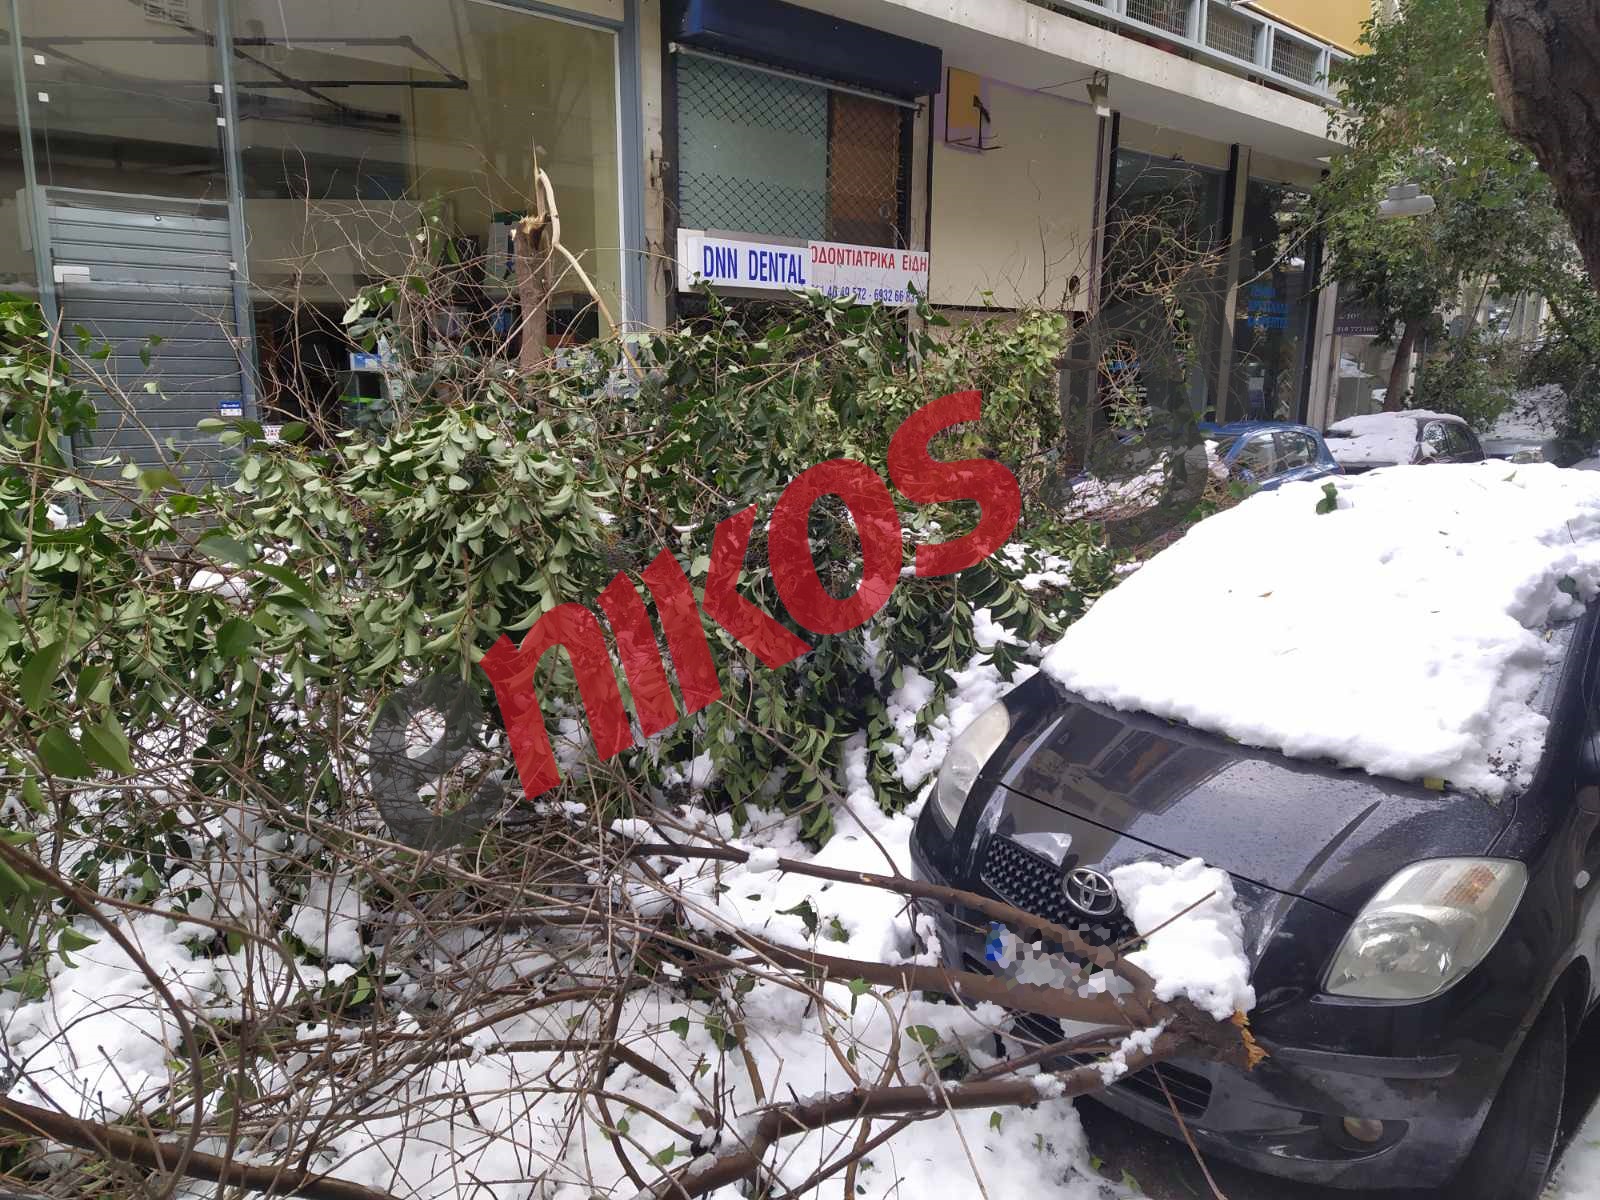 Κακοκαιρία “Ελπίς”: Αγανακτισμένοι οι πολίτες – Πεσμένα δένδρα και καλώδια σε πολλές περιοχές της Αθήνας